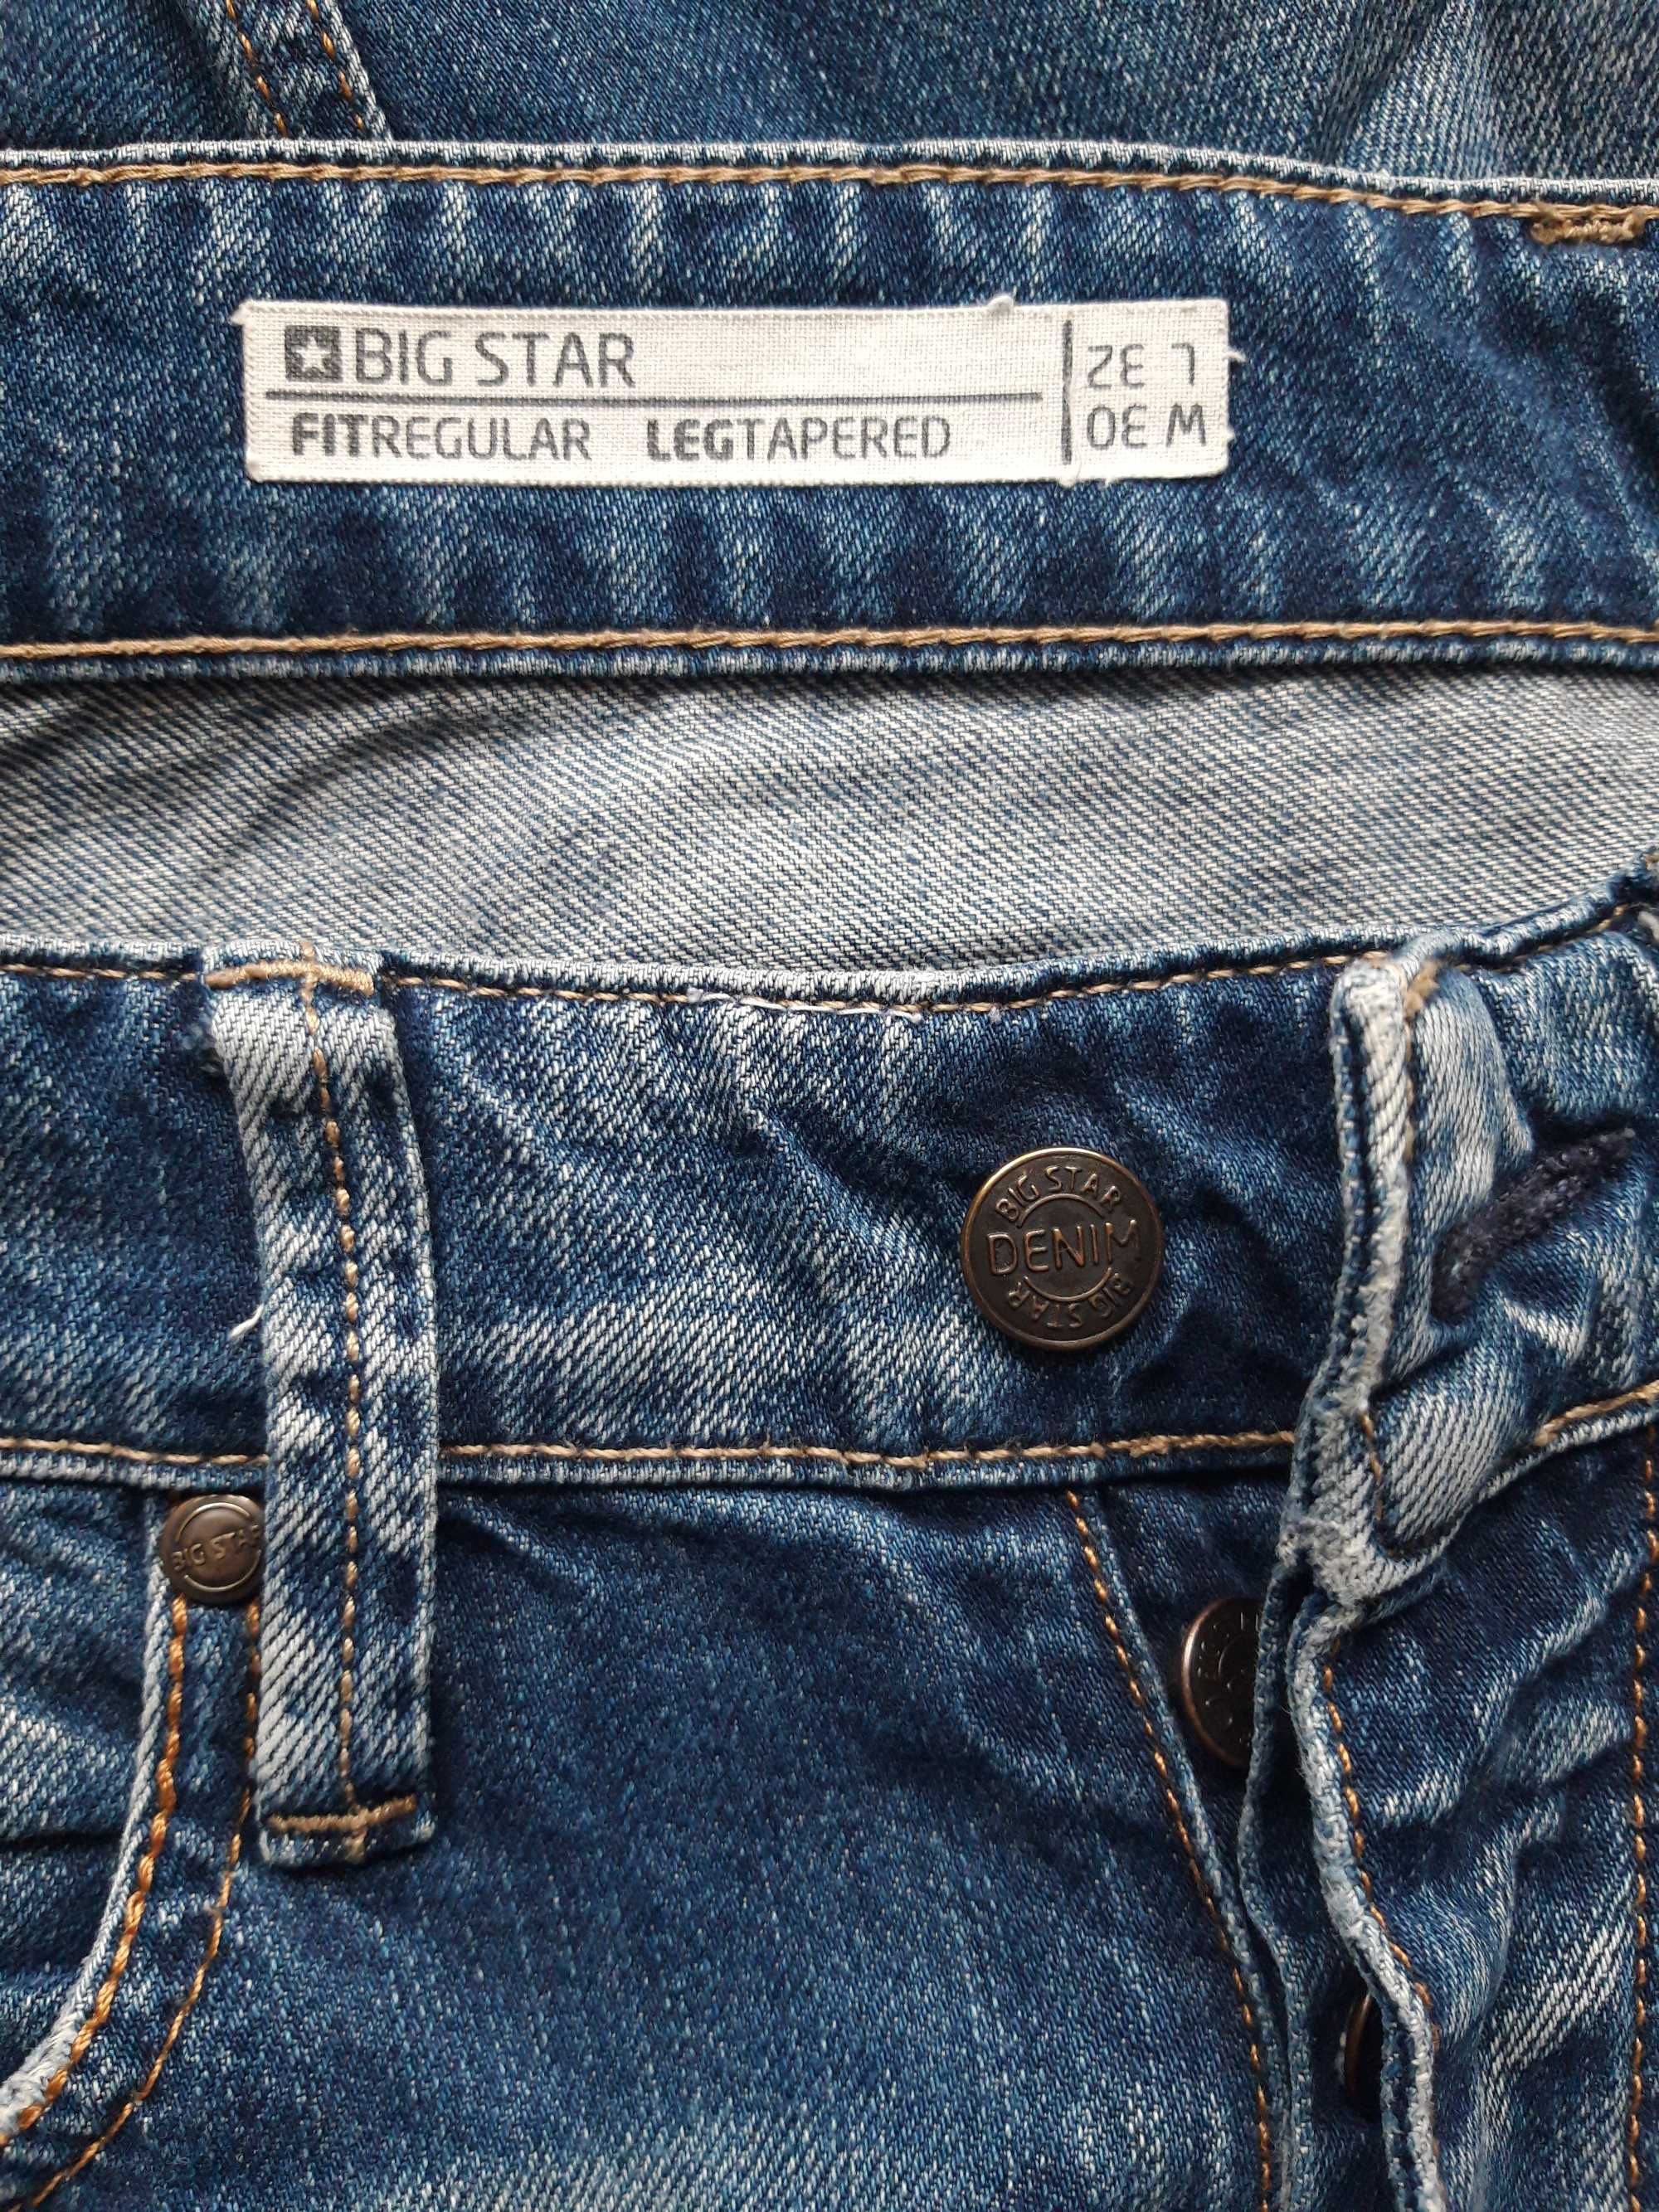 BIG STAR rozm 30/ 32 jeans jeansy męskie młodzieżowe klasyczne